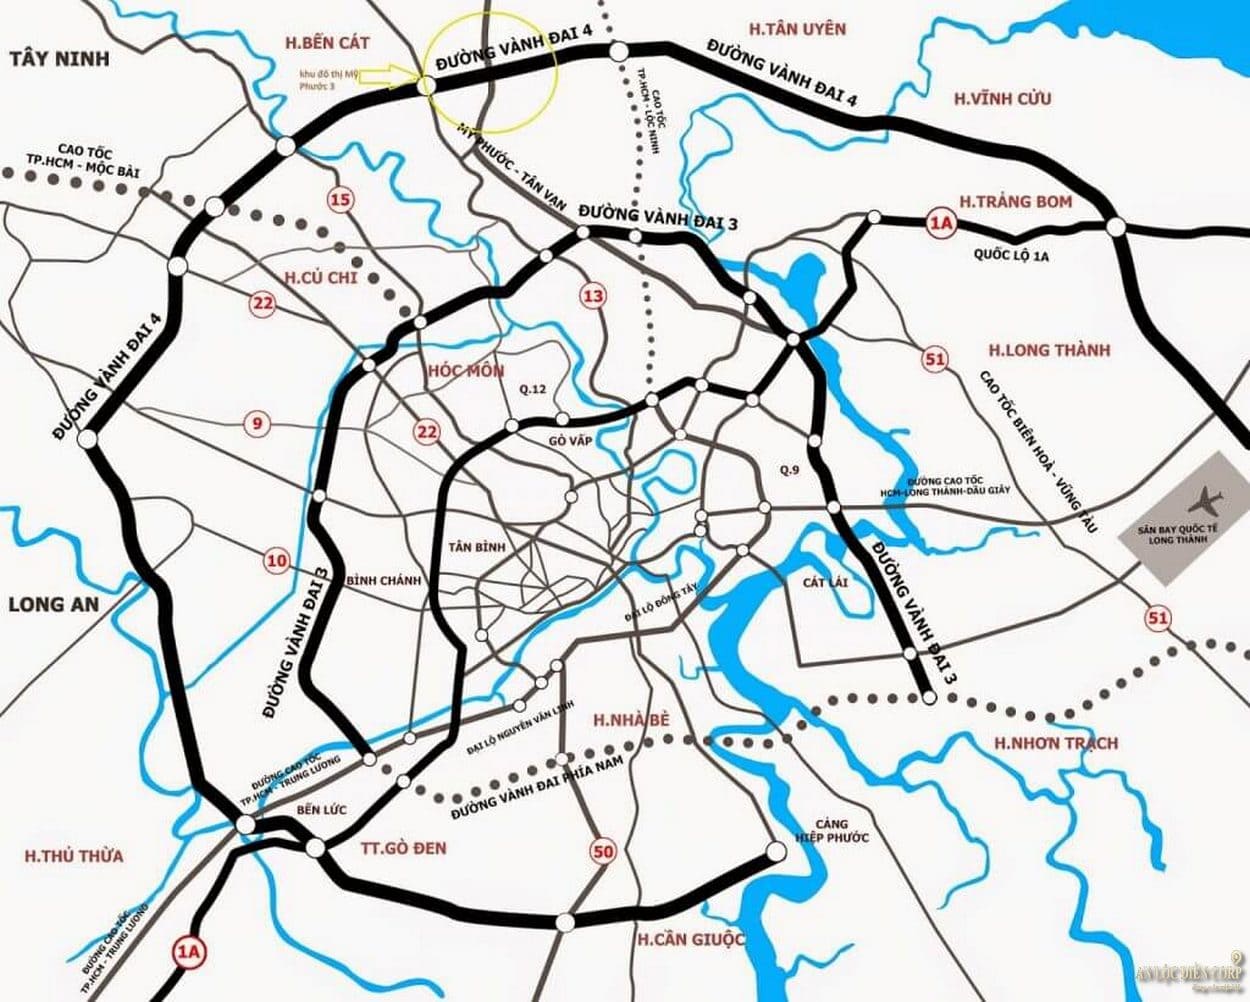 Hình ảnh bản đồ quy hoạch chi tiết đường vành đai 3 và các đường vành đai vệ tinh xung quanh TP. hồ Chí Minh